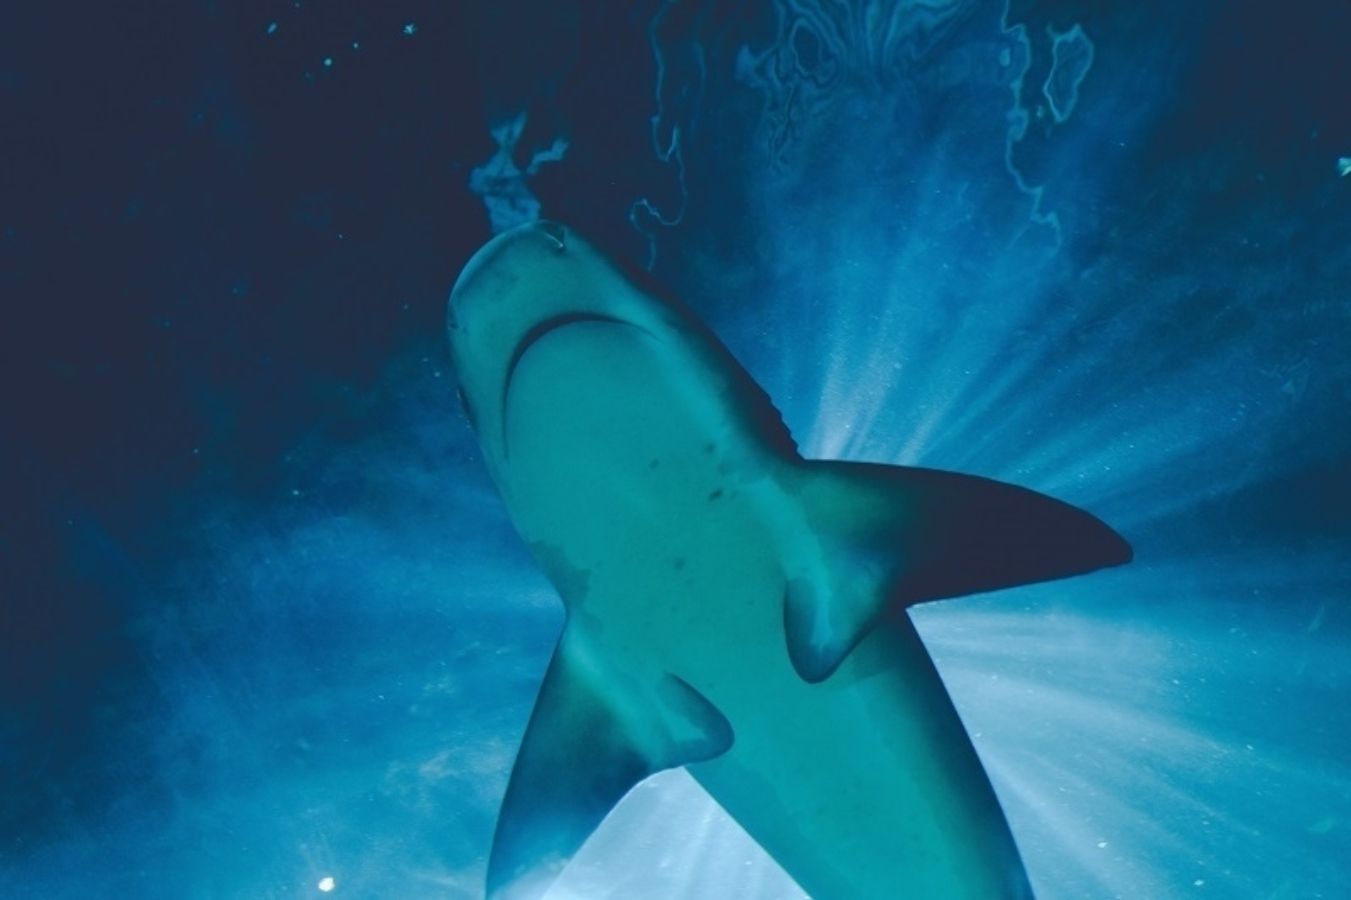 Los ataques de tiburones son más comunes con luna llena, según un estudio. Foto: Europa Press